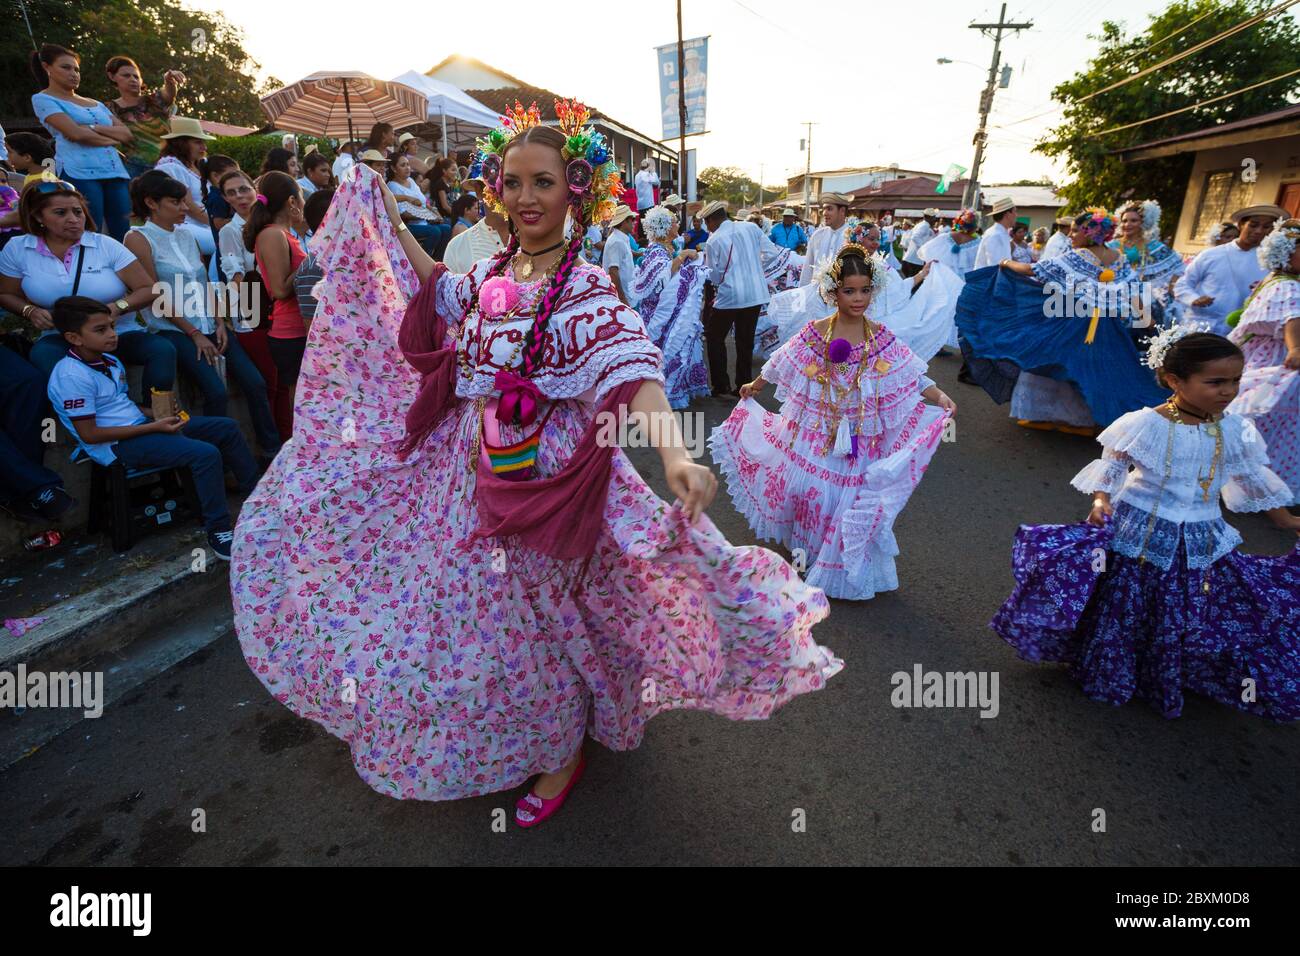 Frauen in Polleras während der jährlichen Veranstaltung "El desfile de las mil Polleras" (tausend Polleras) in Las Tablas, Provinz Los Santos, Republik Panama. Stockfoto